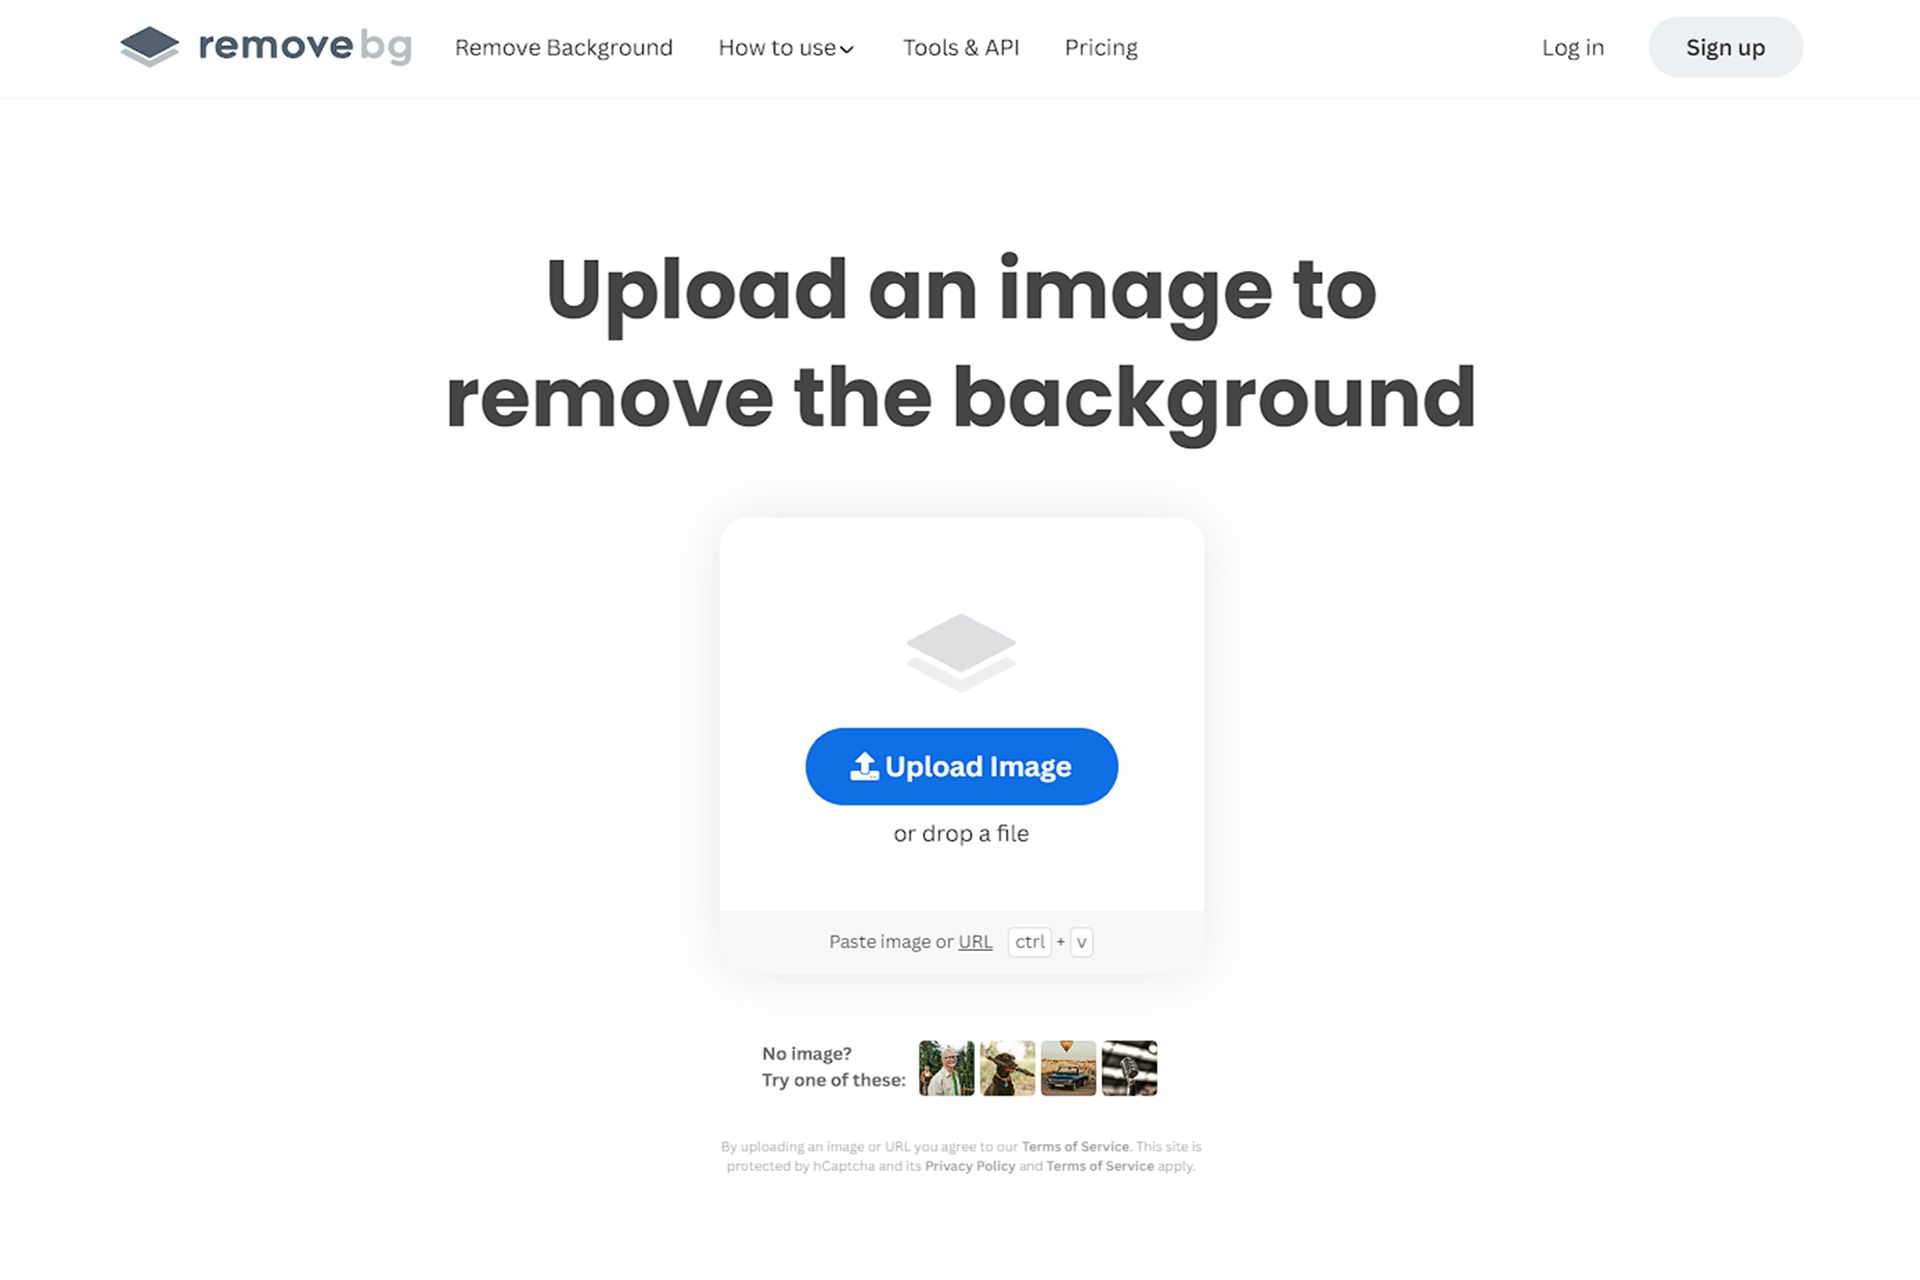 صفحه اصلی سایت remove bg که محلی برای ارسال عکس دارد